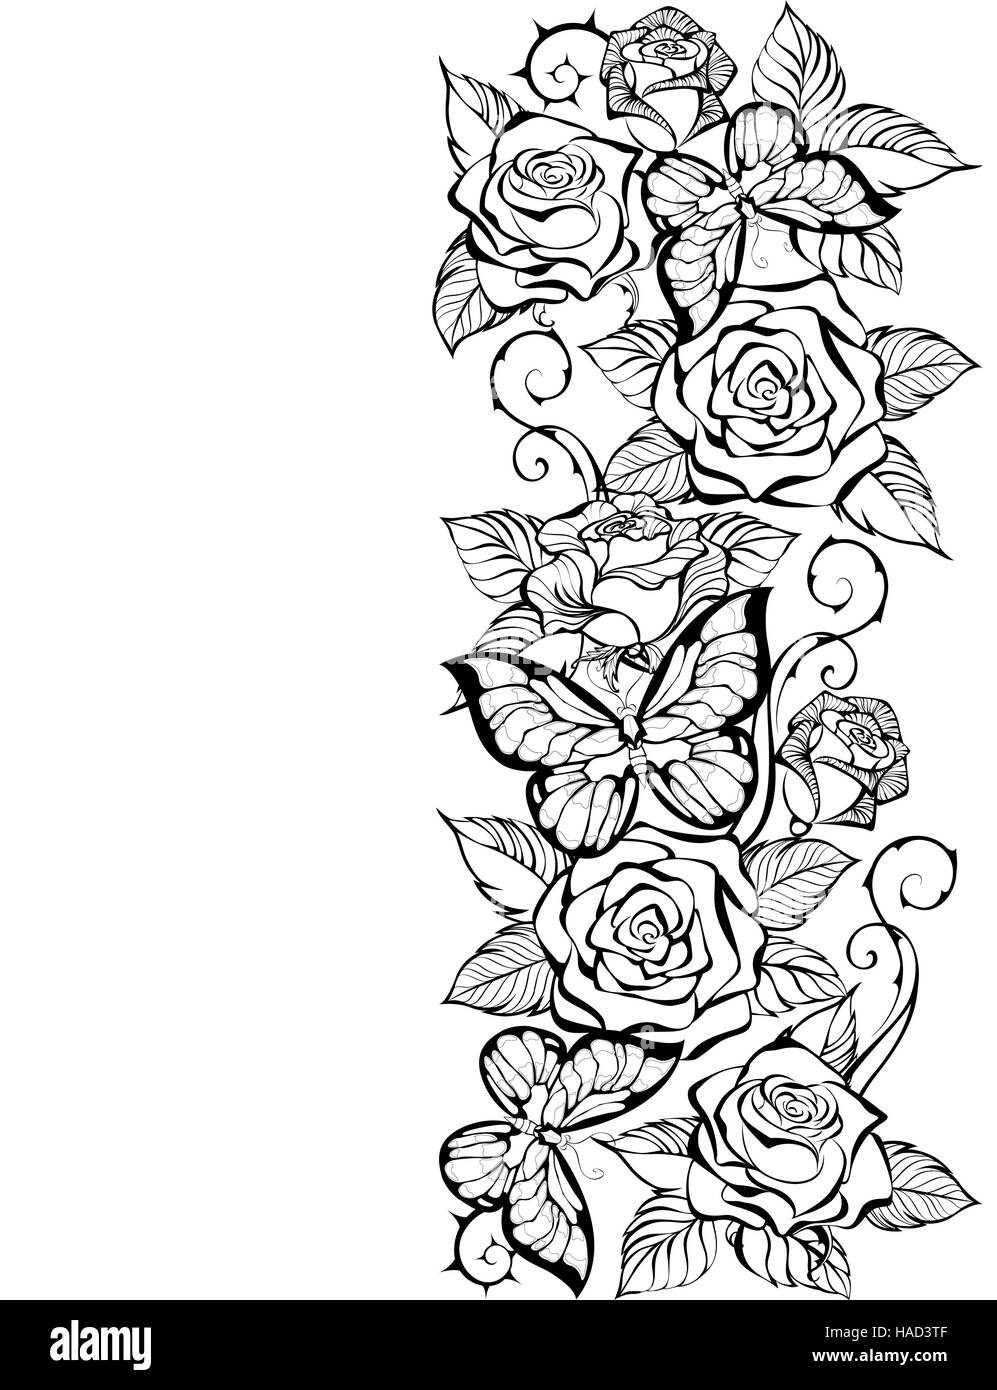 Borde del contorno de rosas y mariposas sobre un fondo blanco. Libro para colorear. Diseño con rosas y mariposas. Ilustración del Vector